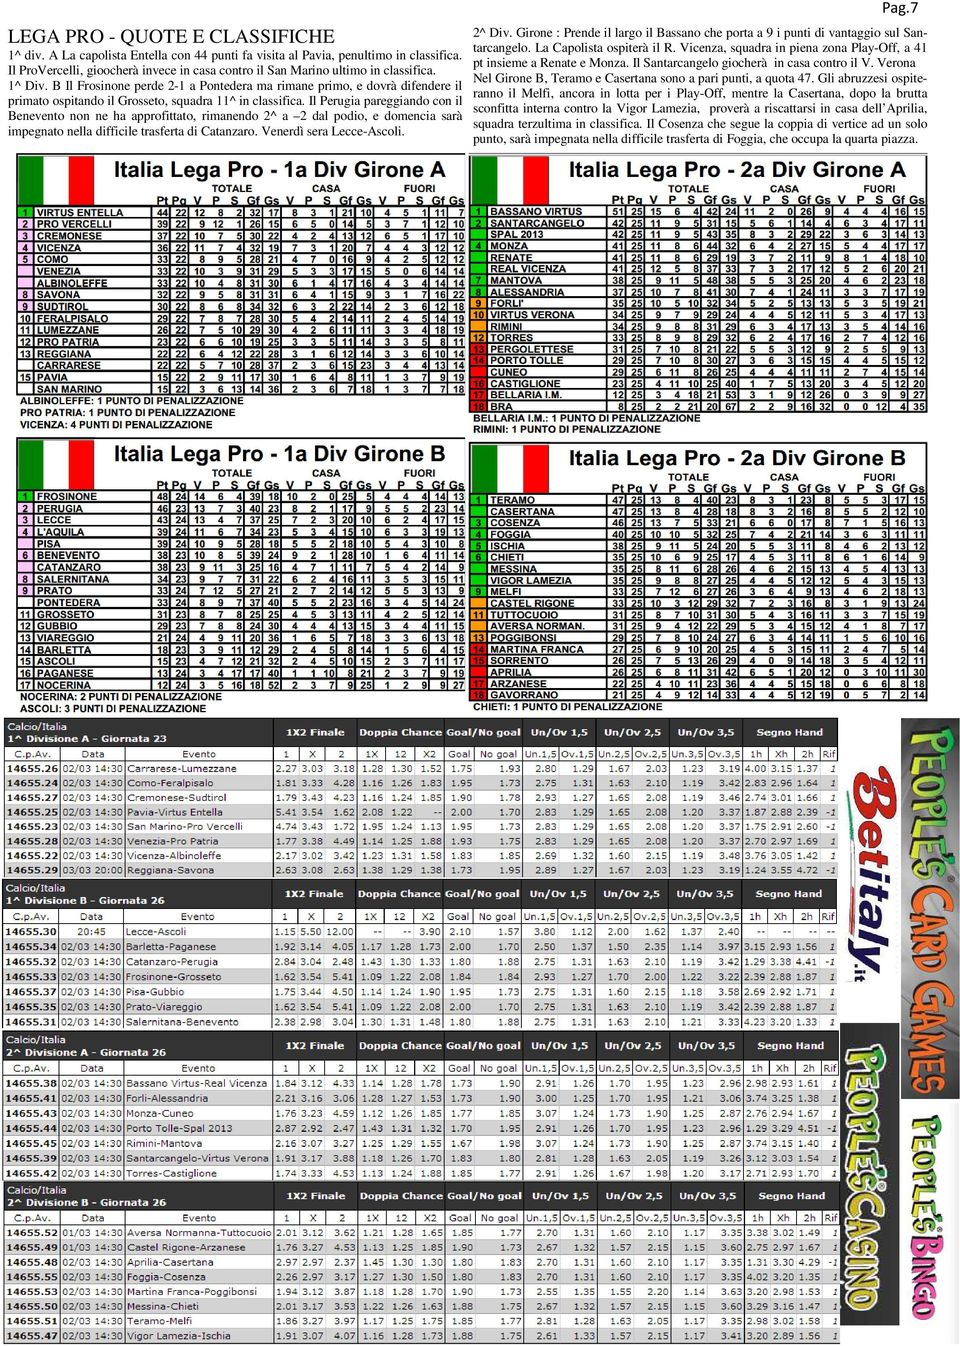 B Il Frosinone perde 2-1 a Pontedera ma rimane primo, e dovrà difendere il primato ospitando il Grosseto, squadra 11^ in classifica.